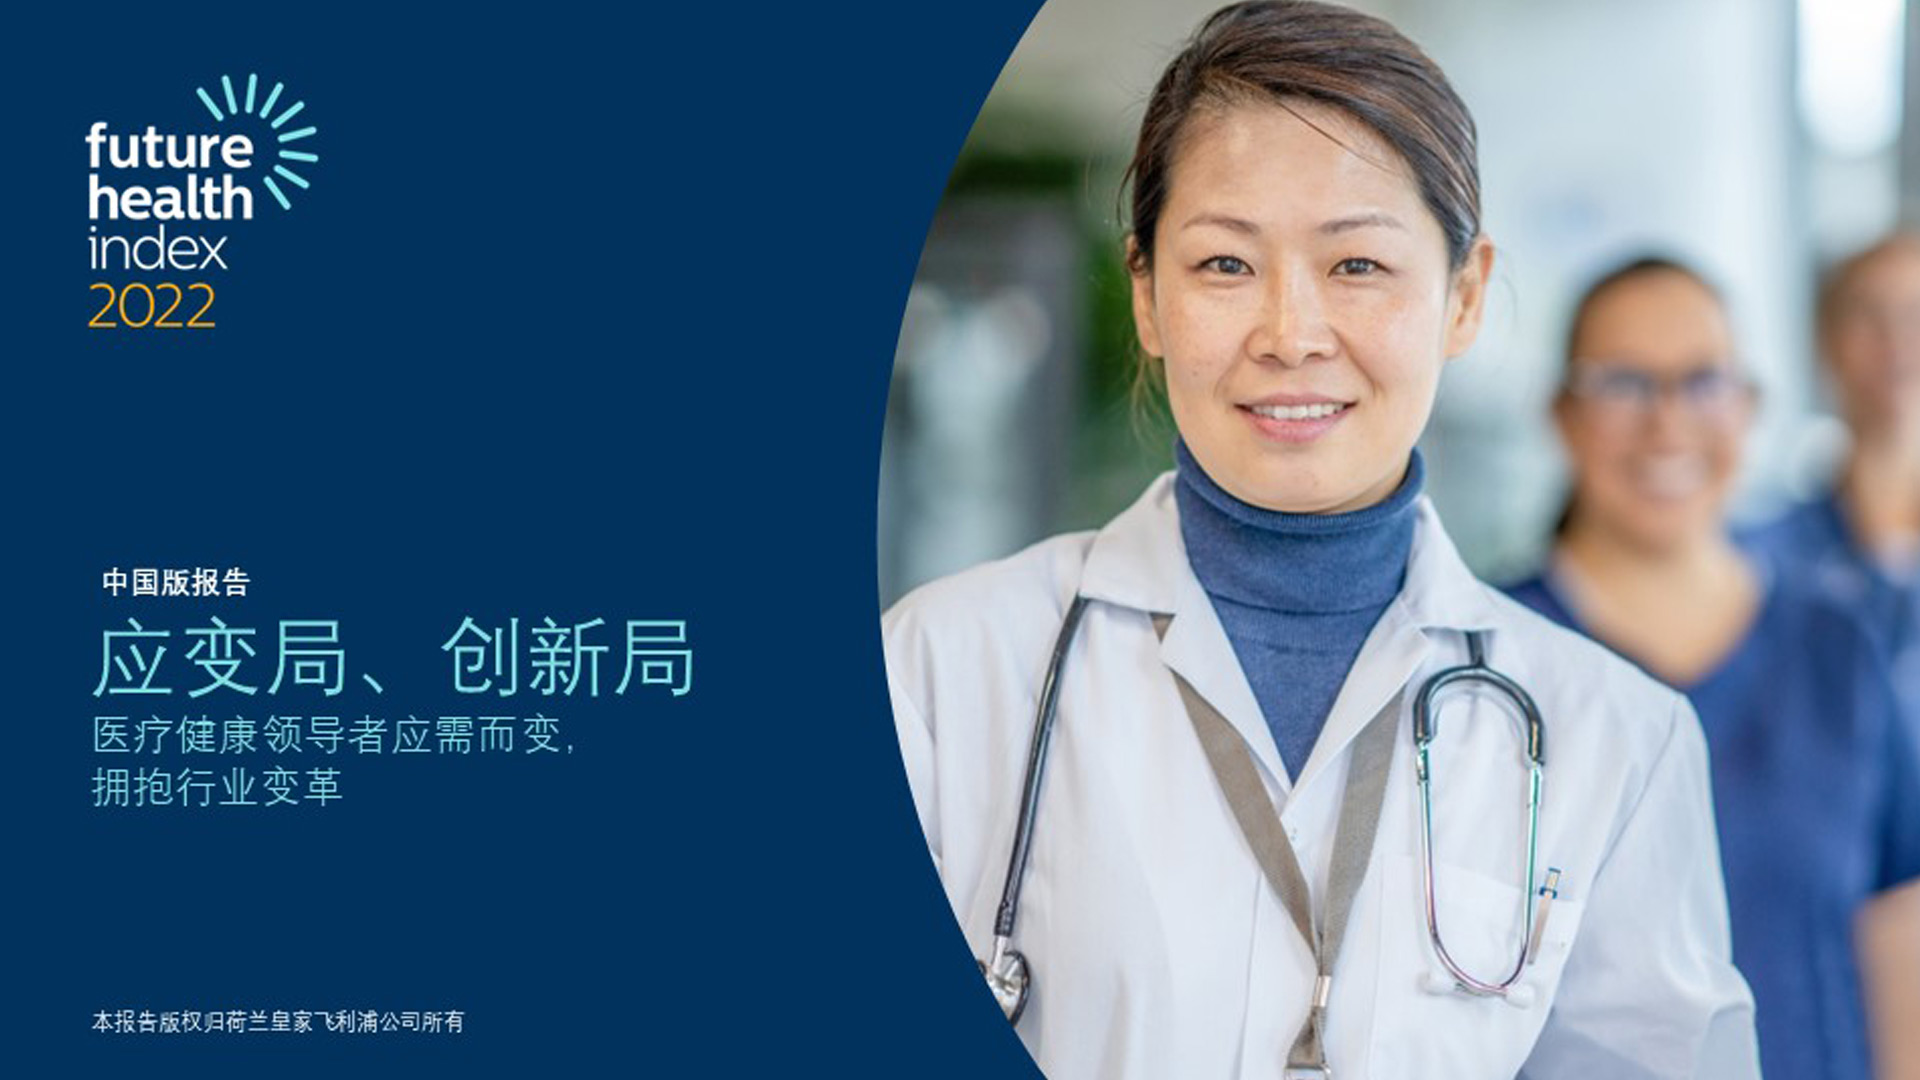 飞利浦发布中国版2021年未来健康指数报告